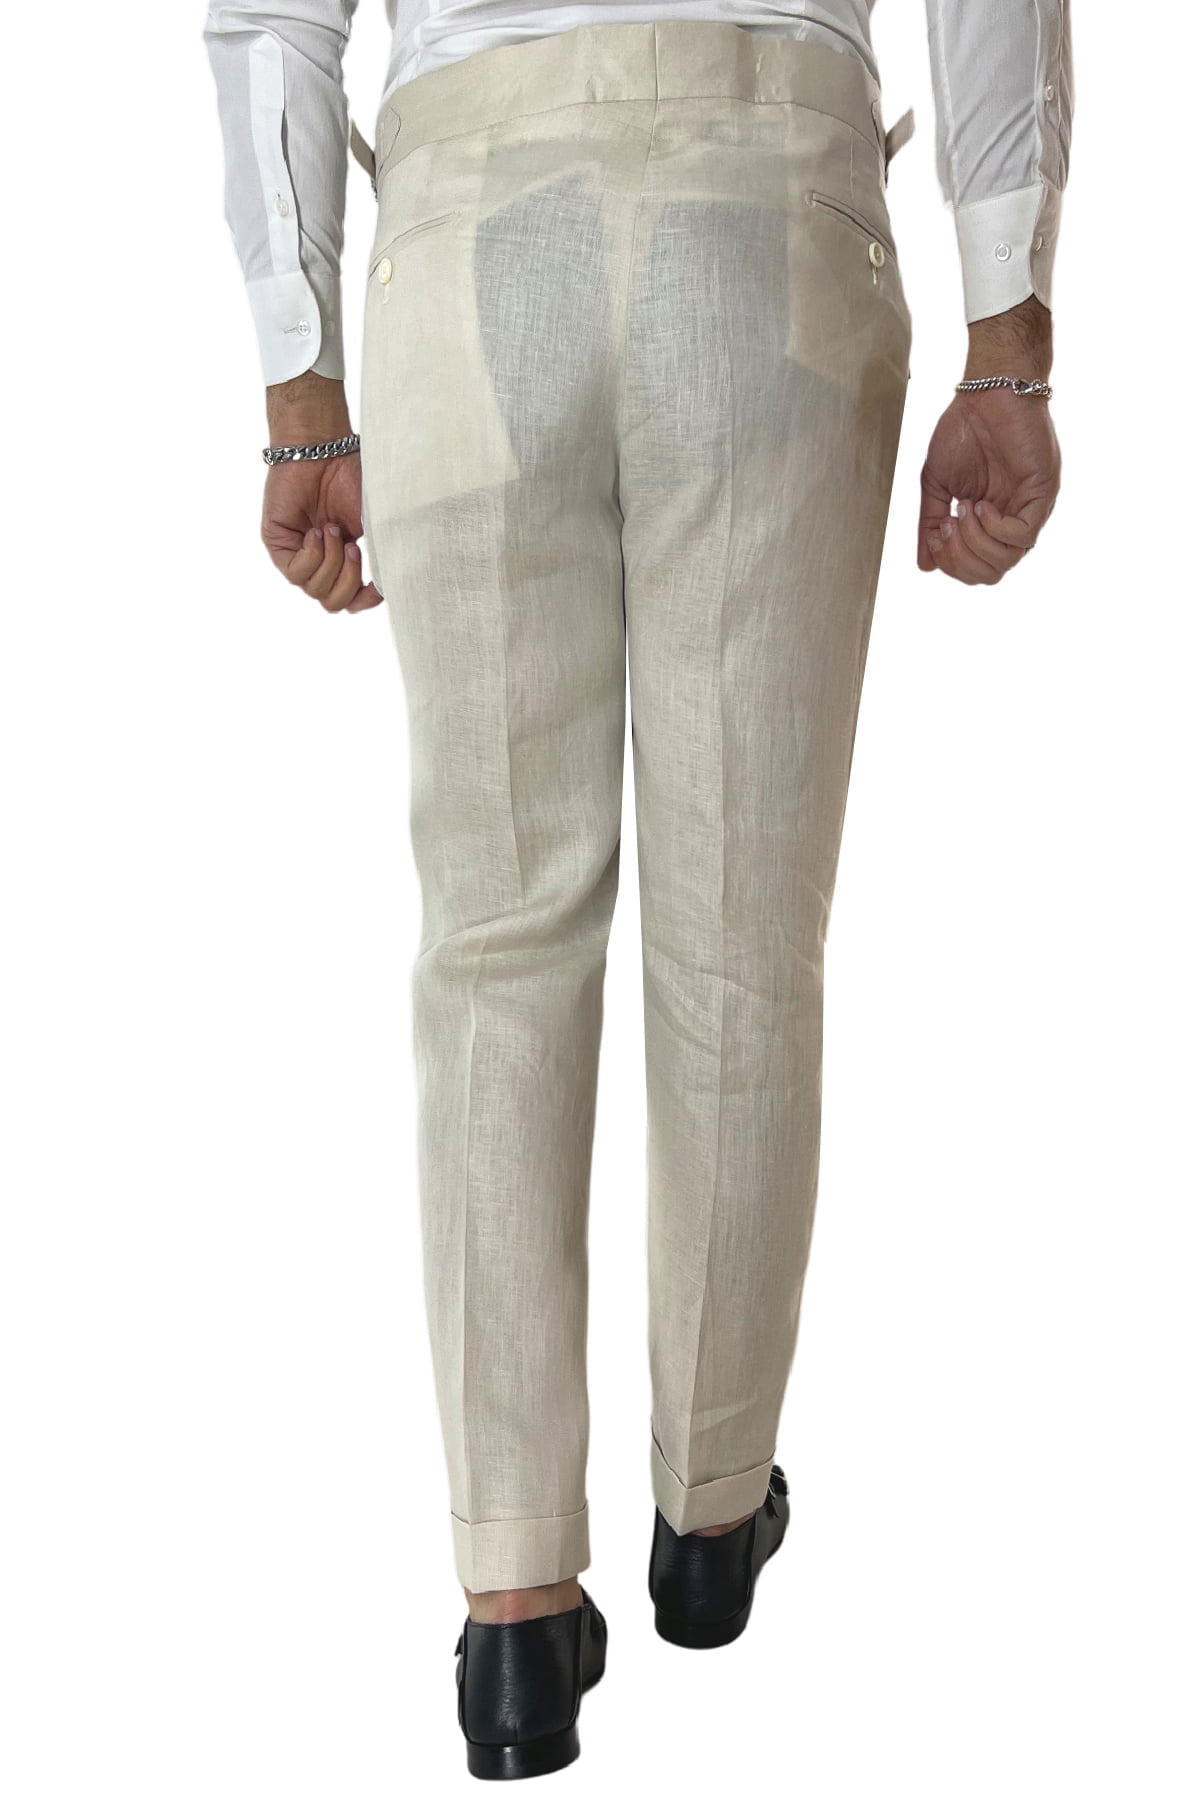 Pantalone uomo beige in lino 100% vita alta con pinces fibbie laterali e risvolto 4cm